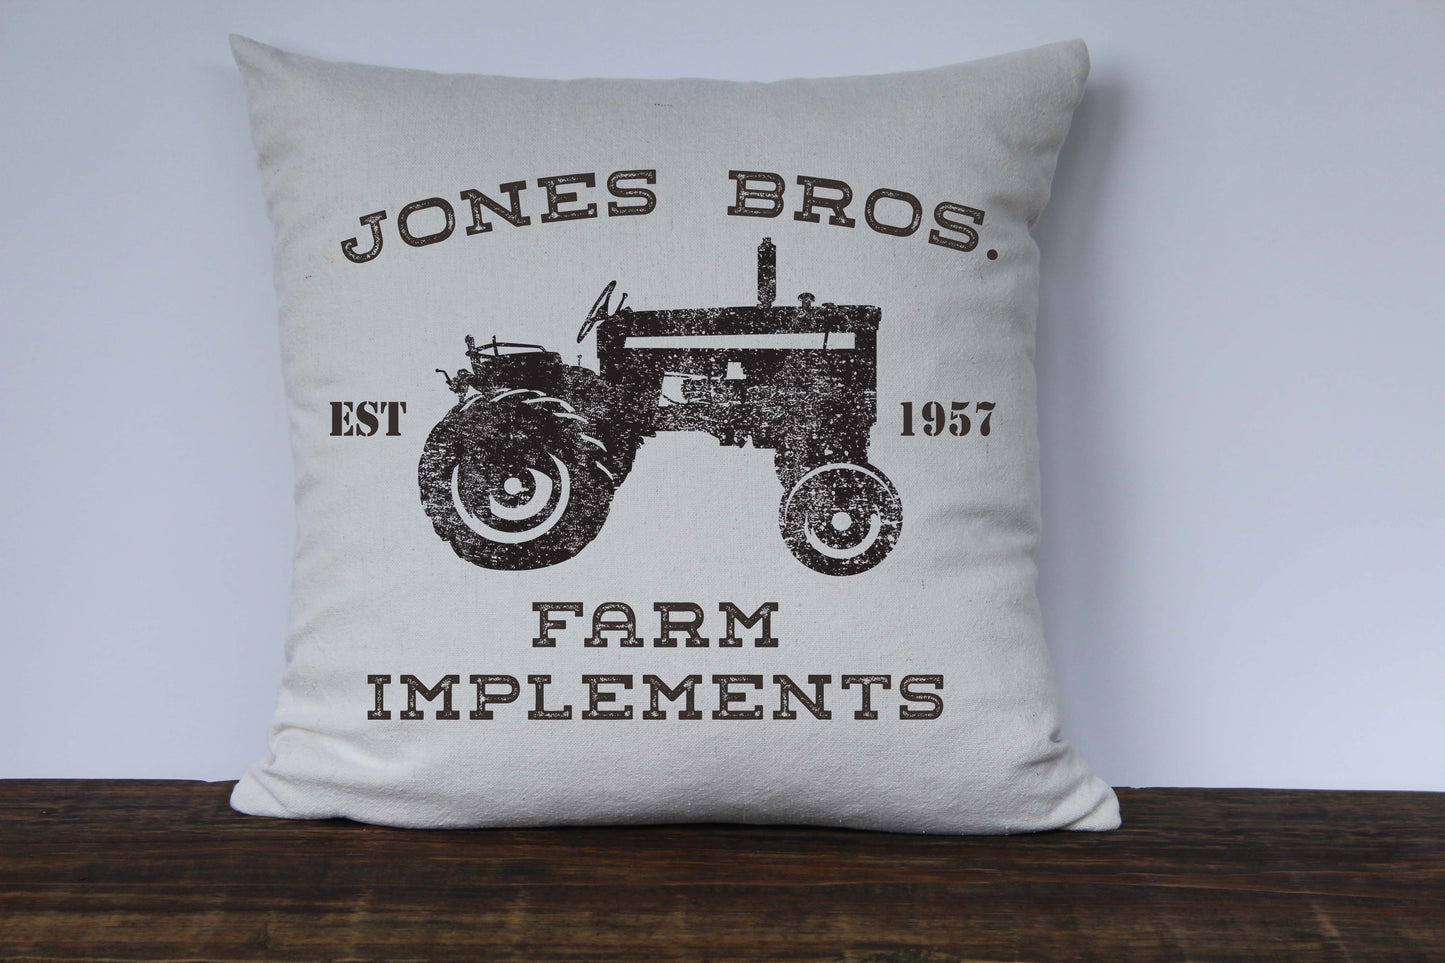 Farmhouse Pillow Cover - Personalized Farm Pillow Cover - Jones Bros Farm Implements - Returning Grace Designs